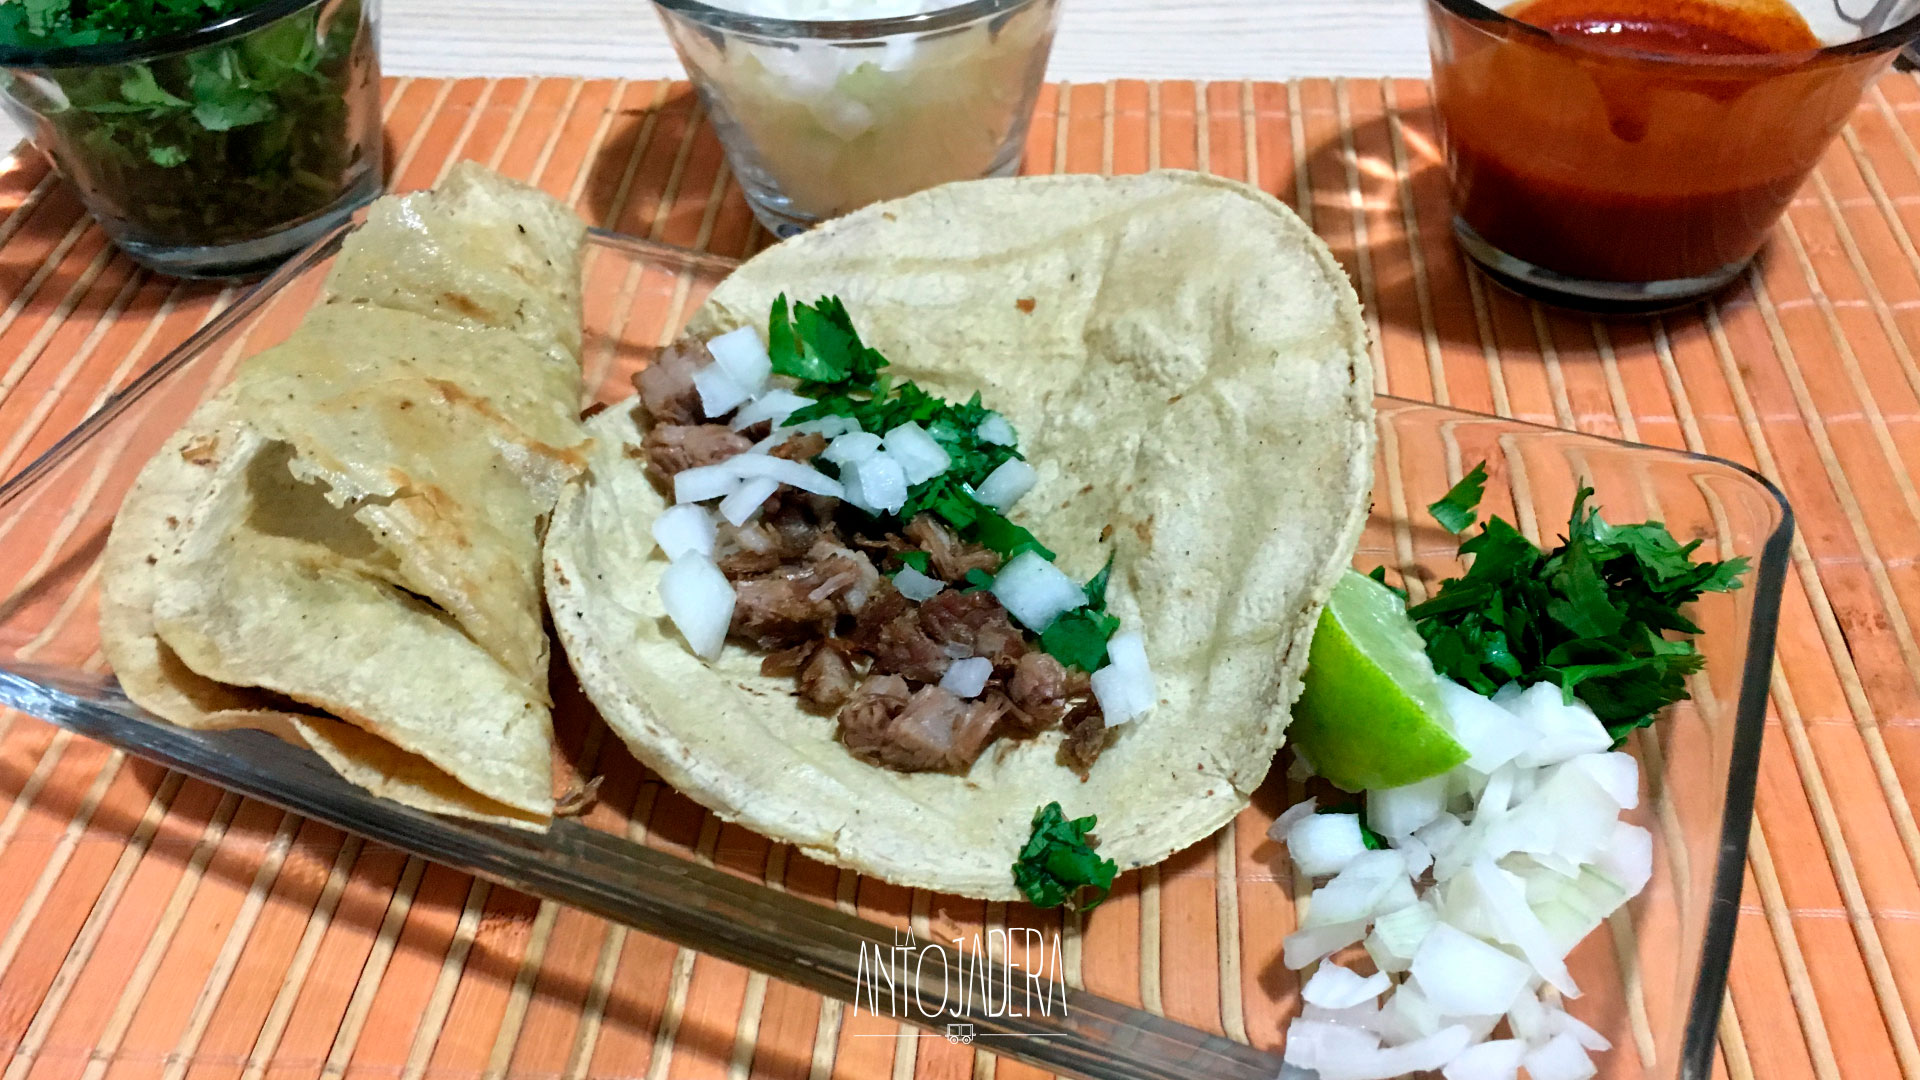 La Antojadera | Tacos de Suadero